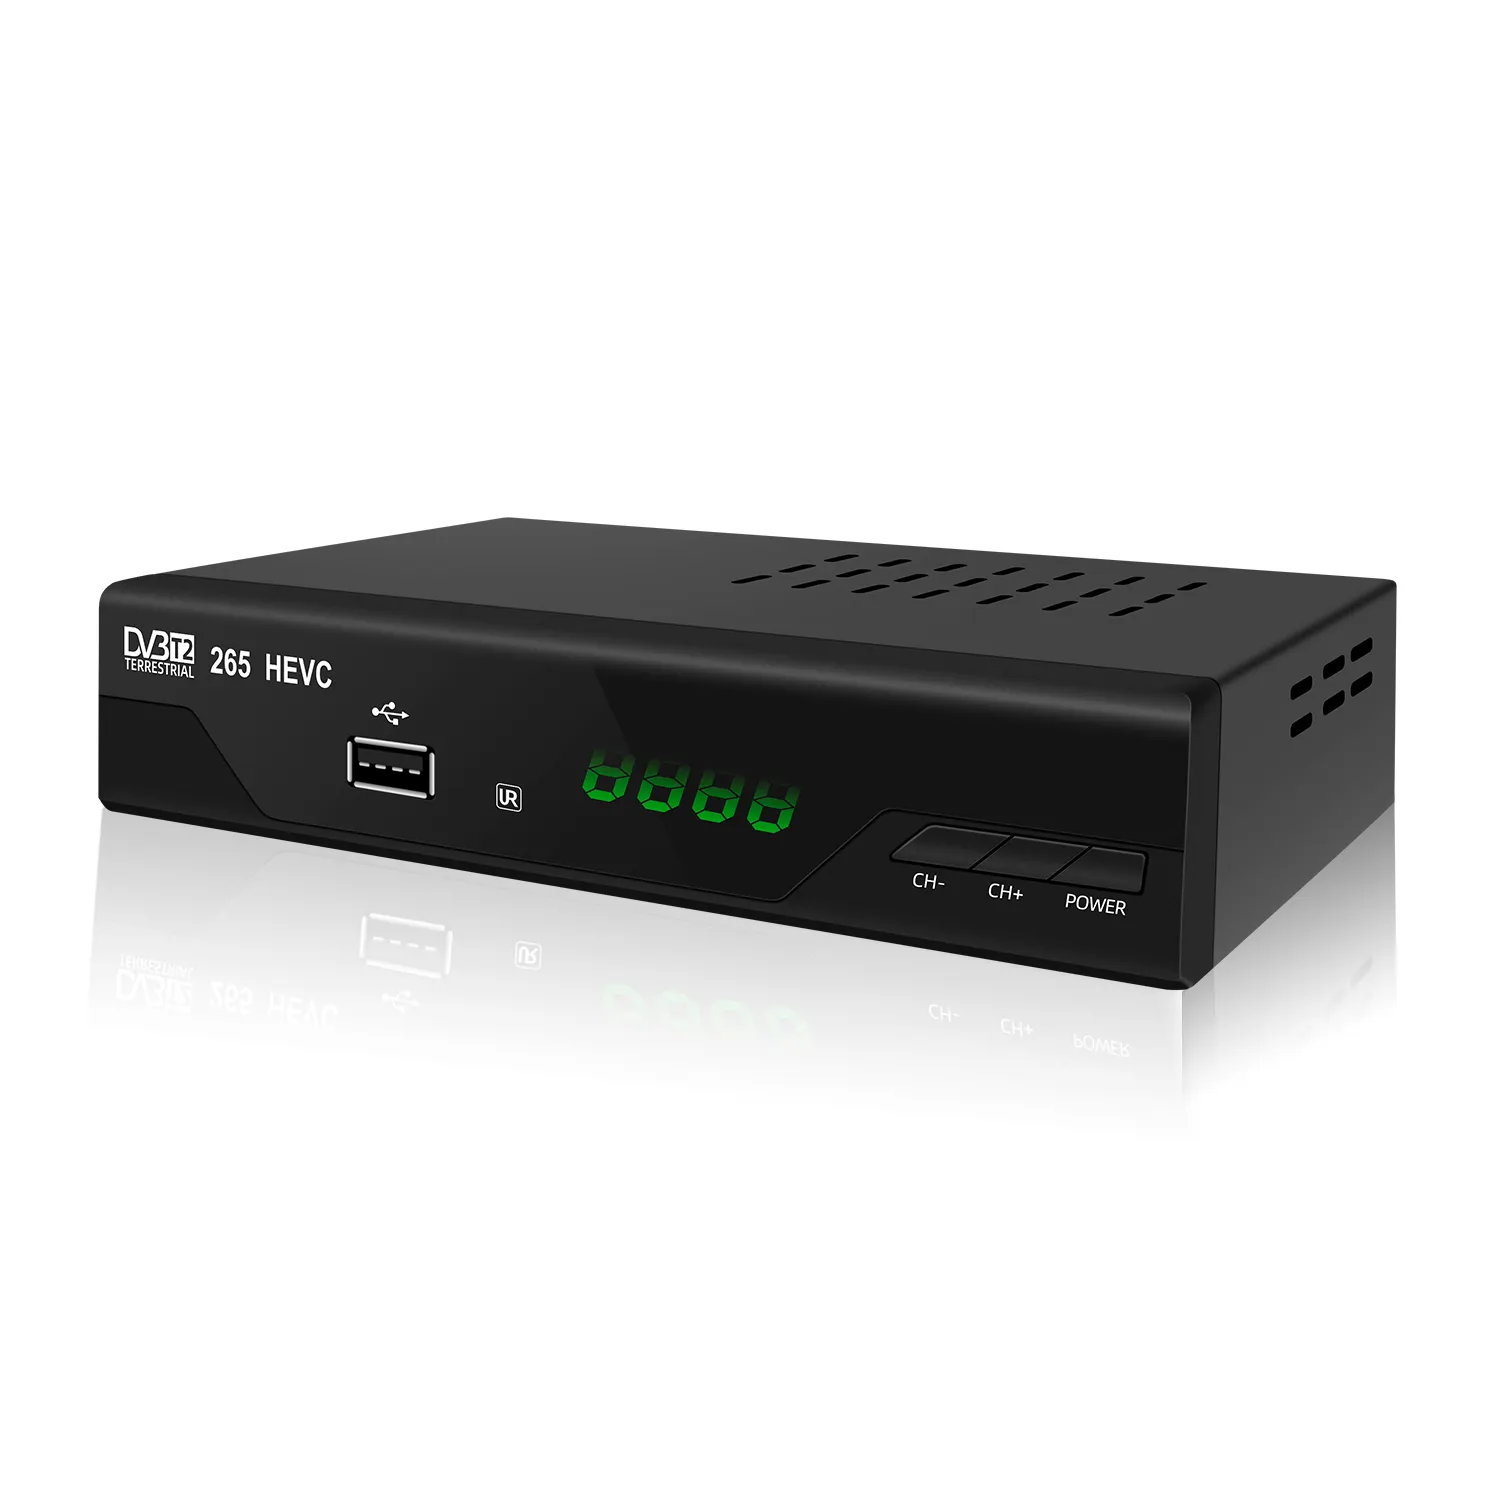 Boîtier TV Full HD 1080 — DVBT2, H265 HEVC principal, 10 bits, décodeur, vente en gros, livraison gratuite